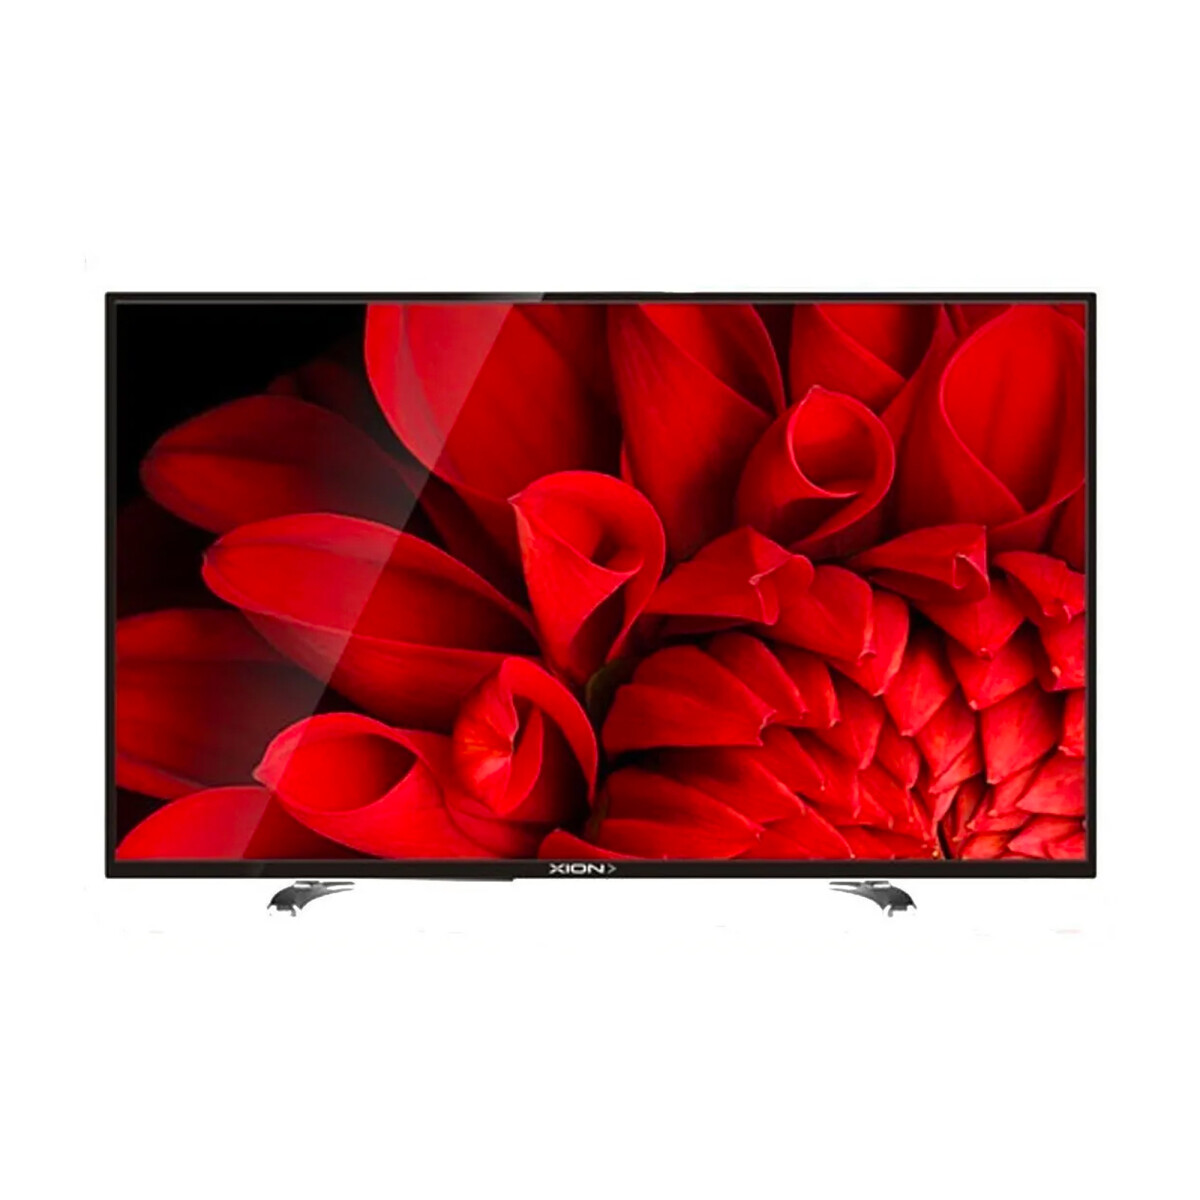 Smart TV 4K Xion 65" Led - XI-LED65-4K 